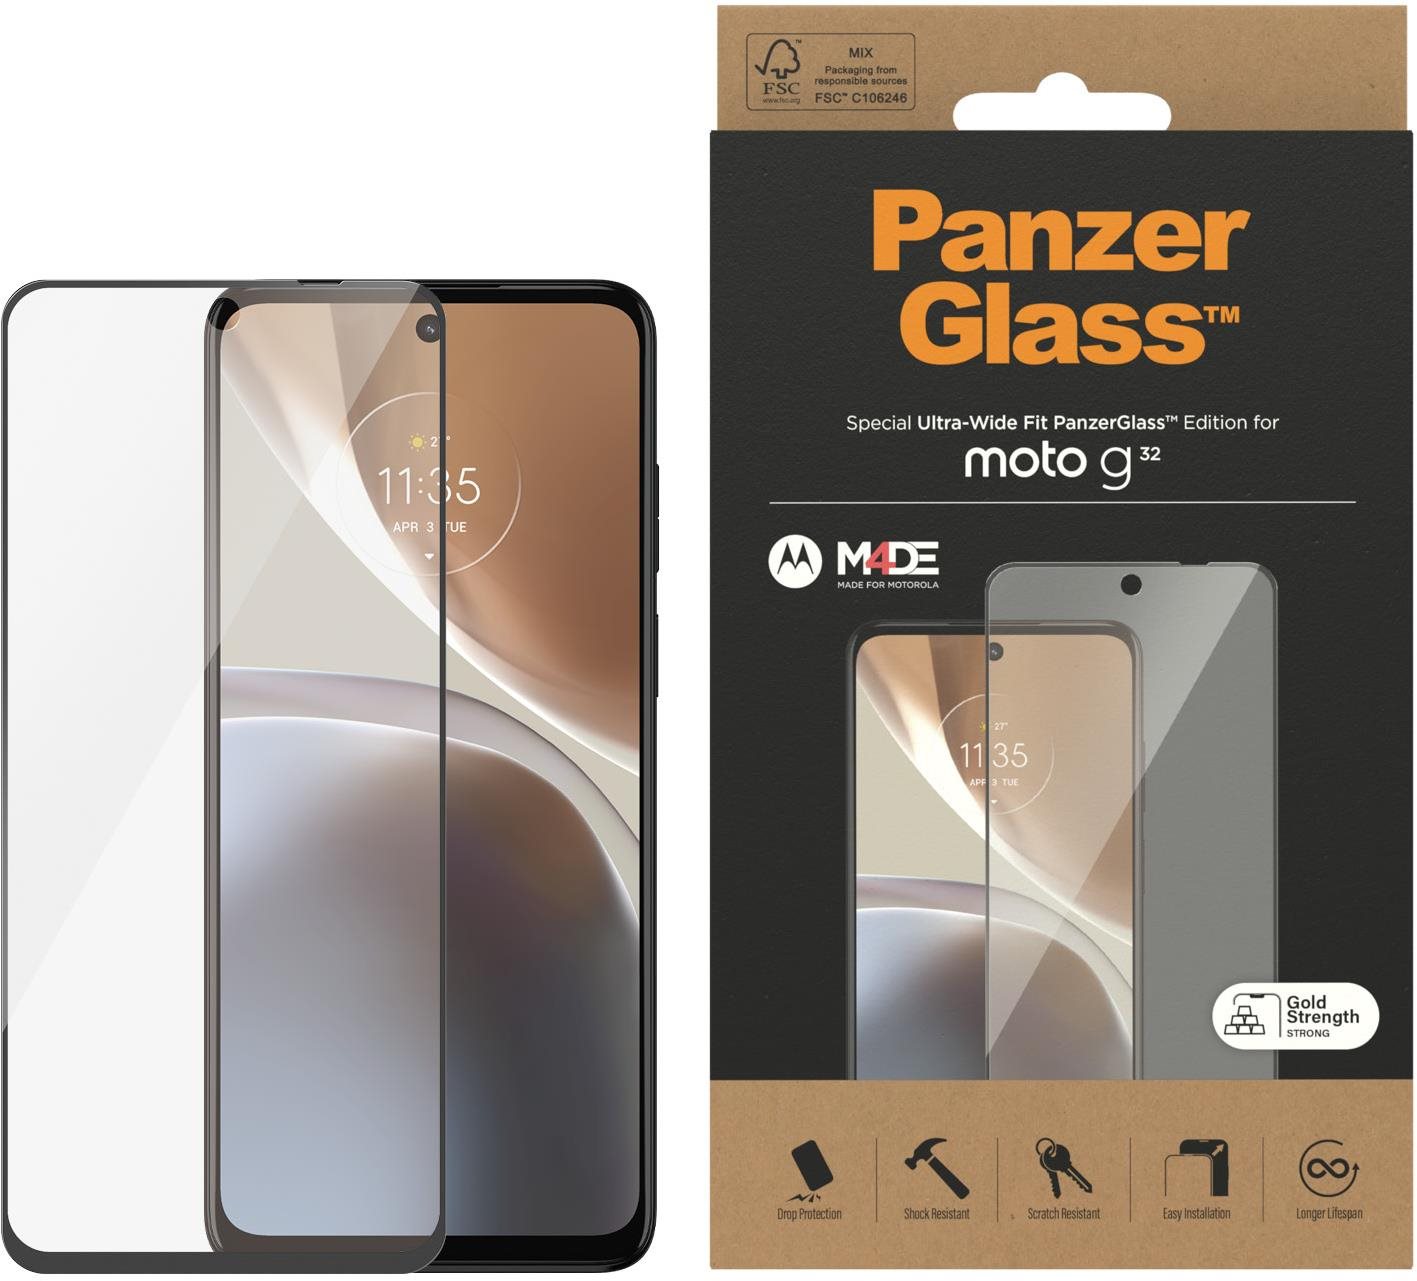 PanzerGlass Motorola Moto G32 üvegfólia